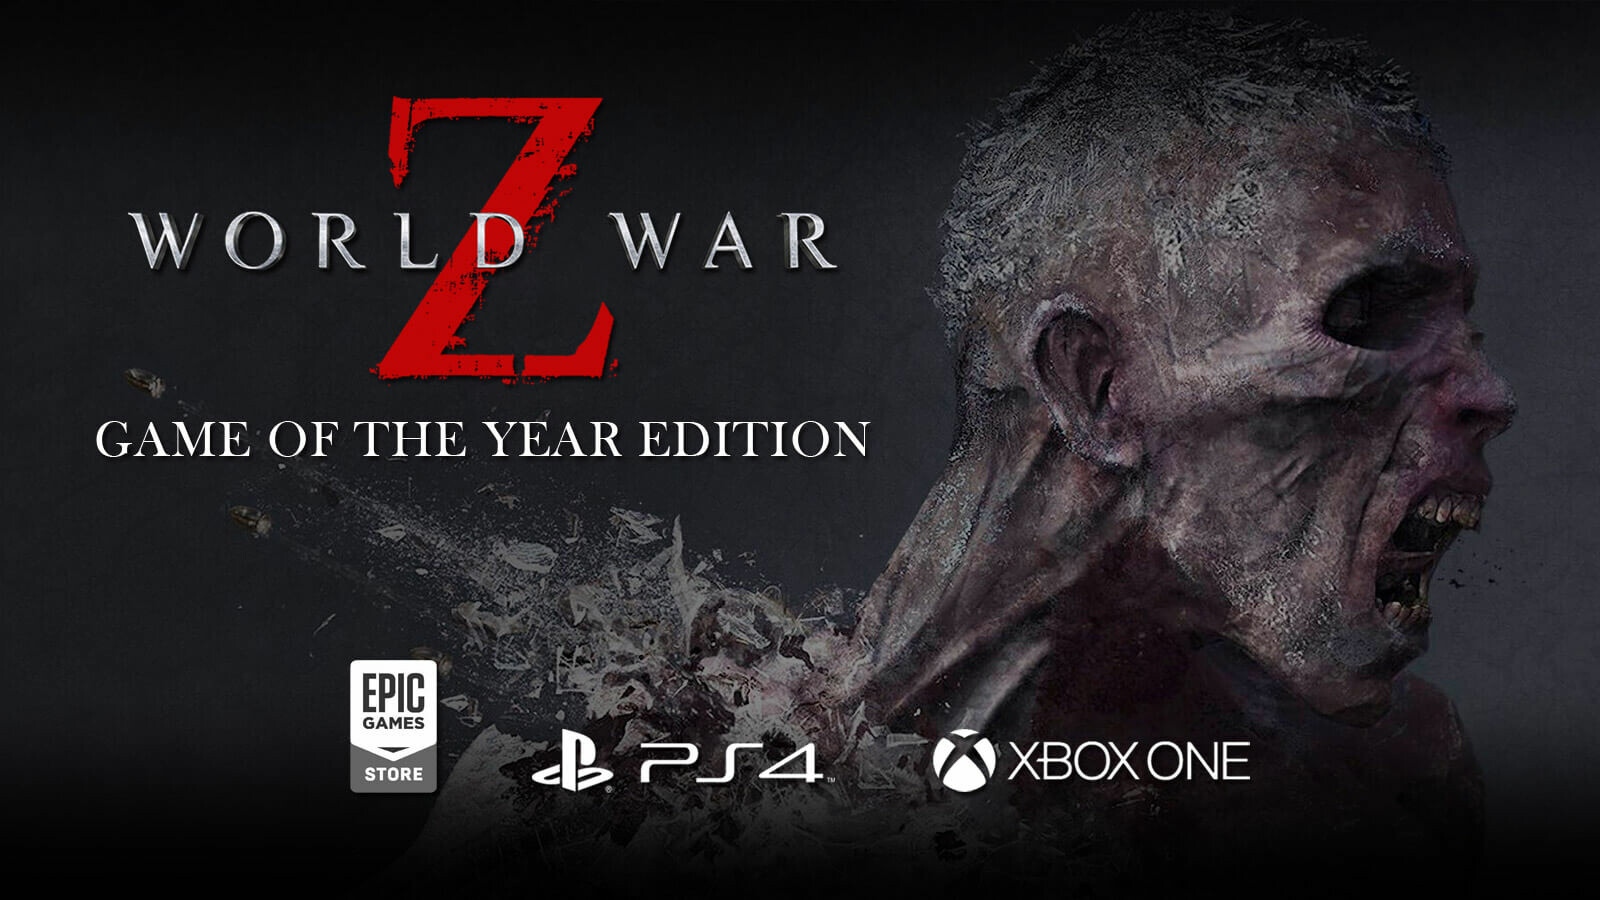 Watch our World War Z gameplay